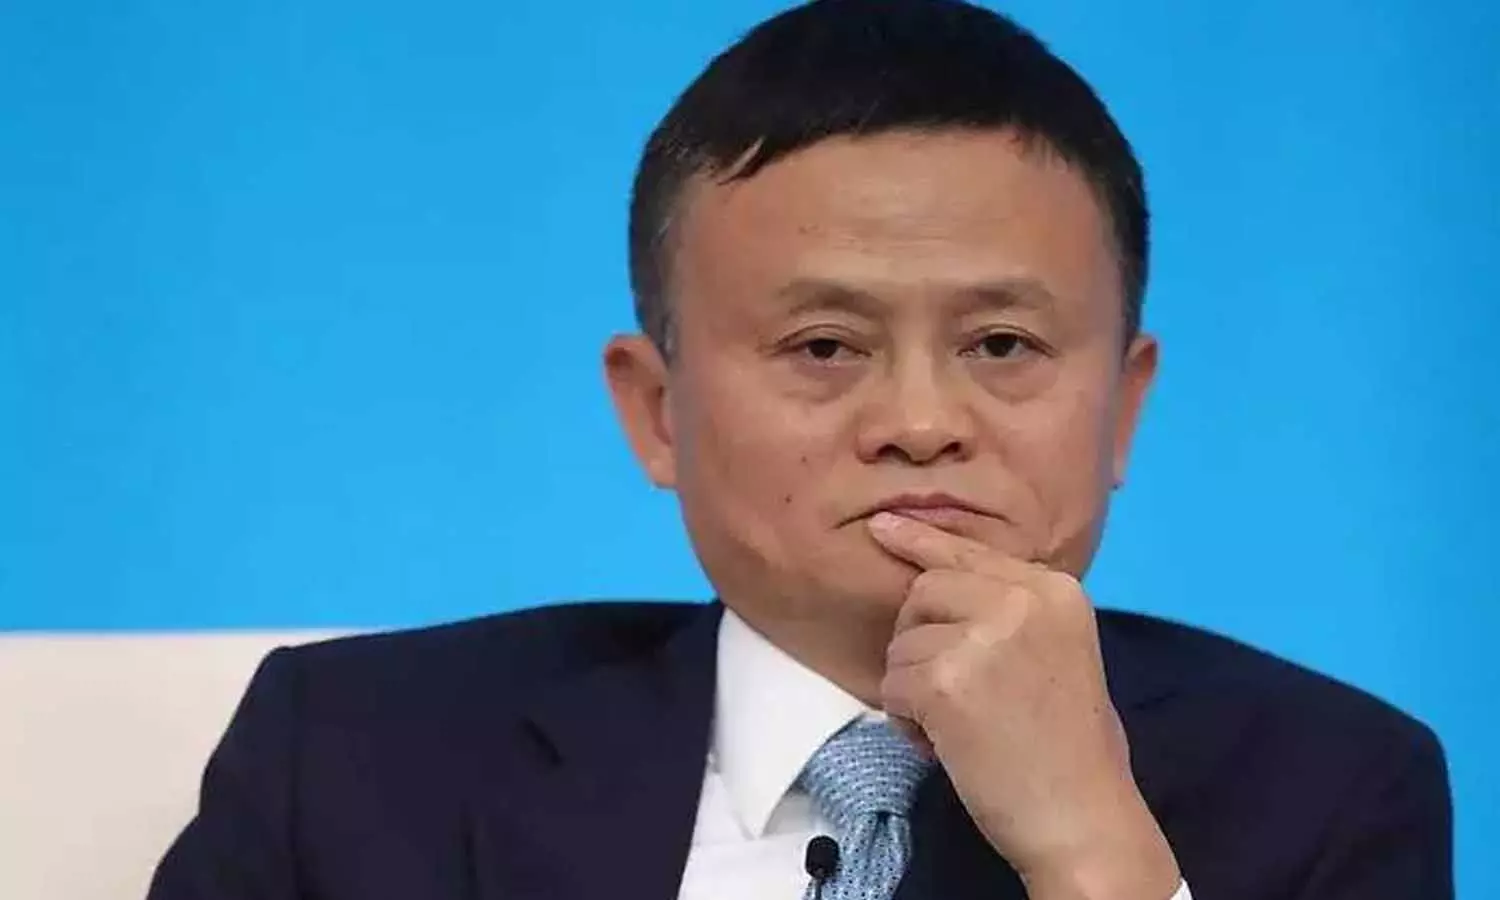 Jack Ma Ko Nuksan: जैक मा मुसीबत में, चीन सरकार की आलोचना के बाद गंवाए 344 अरब डॉलर